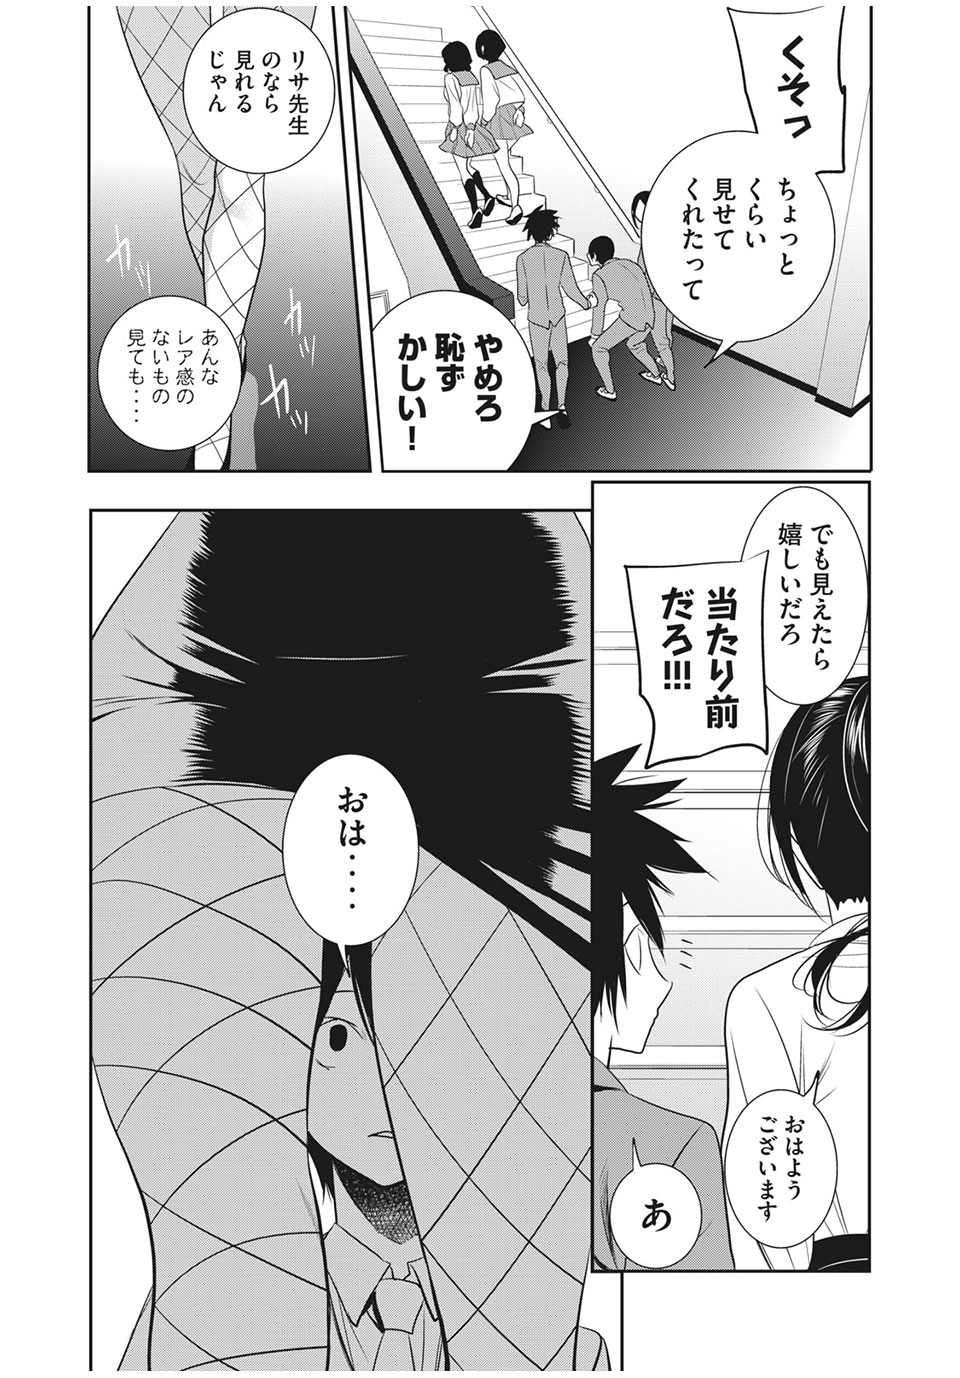 Eigo ×× Sensei - Chapter 23 - Page 3